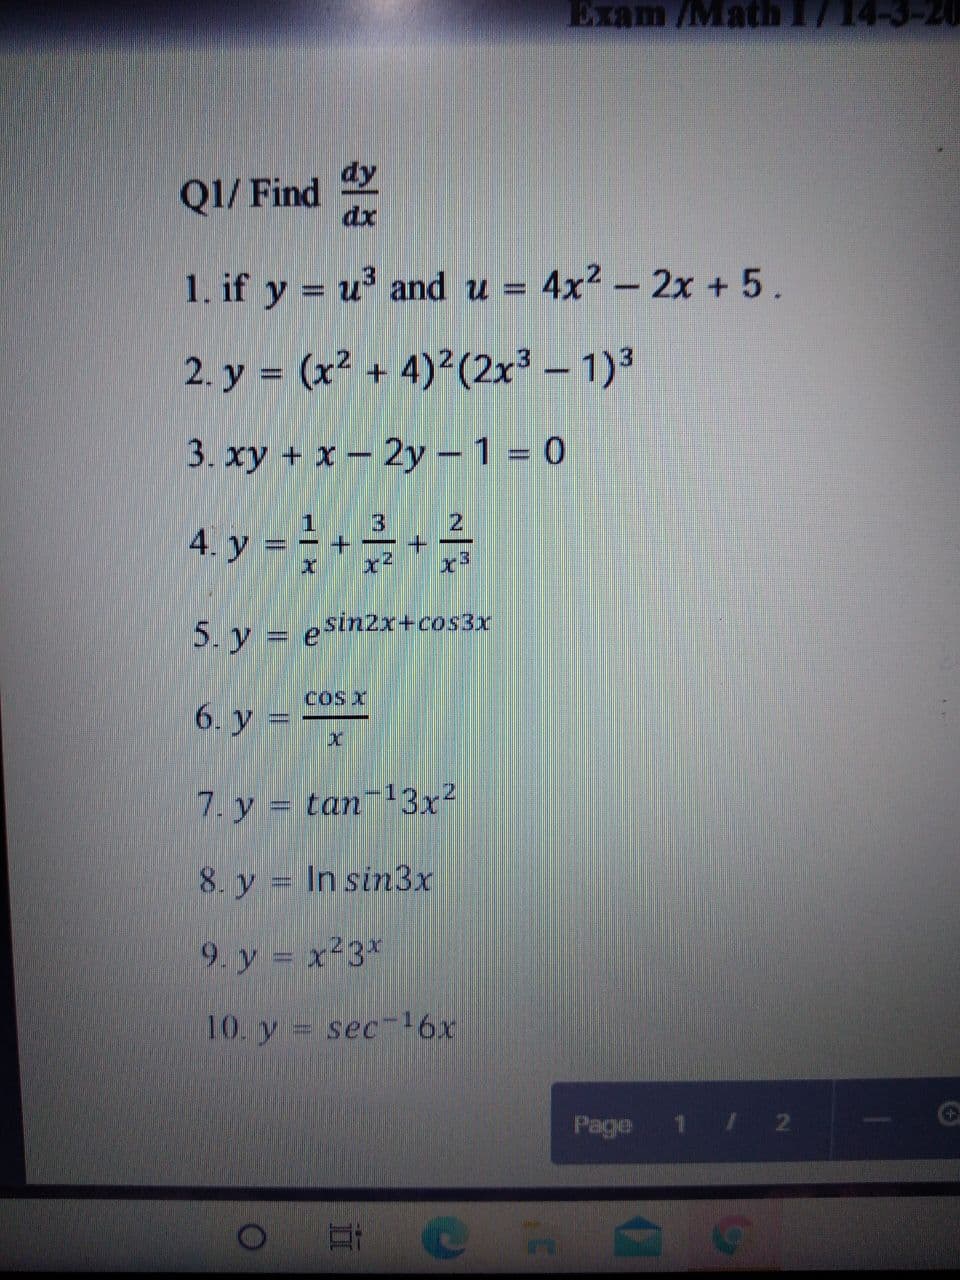 Exam /Math 1714-3-20
dy
Q1/ Find
dx
1. if y = u and u = 4x2 – 2x + 5.
2. y = (x² + 4)²(2x3 – 1)3
%3D
3. xy + x- 2y - 1 = 0
1
4. y
5. y = esin2x+cos3x
COs X
6. y =
7. y = tan13x²
8. y = In sin3x
9. y = x23*
10. y
sec-16x
Page 1 / 2
